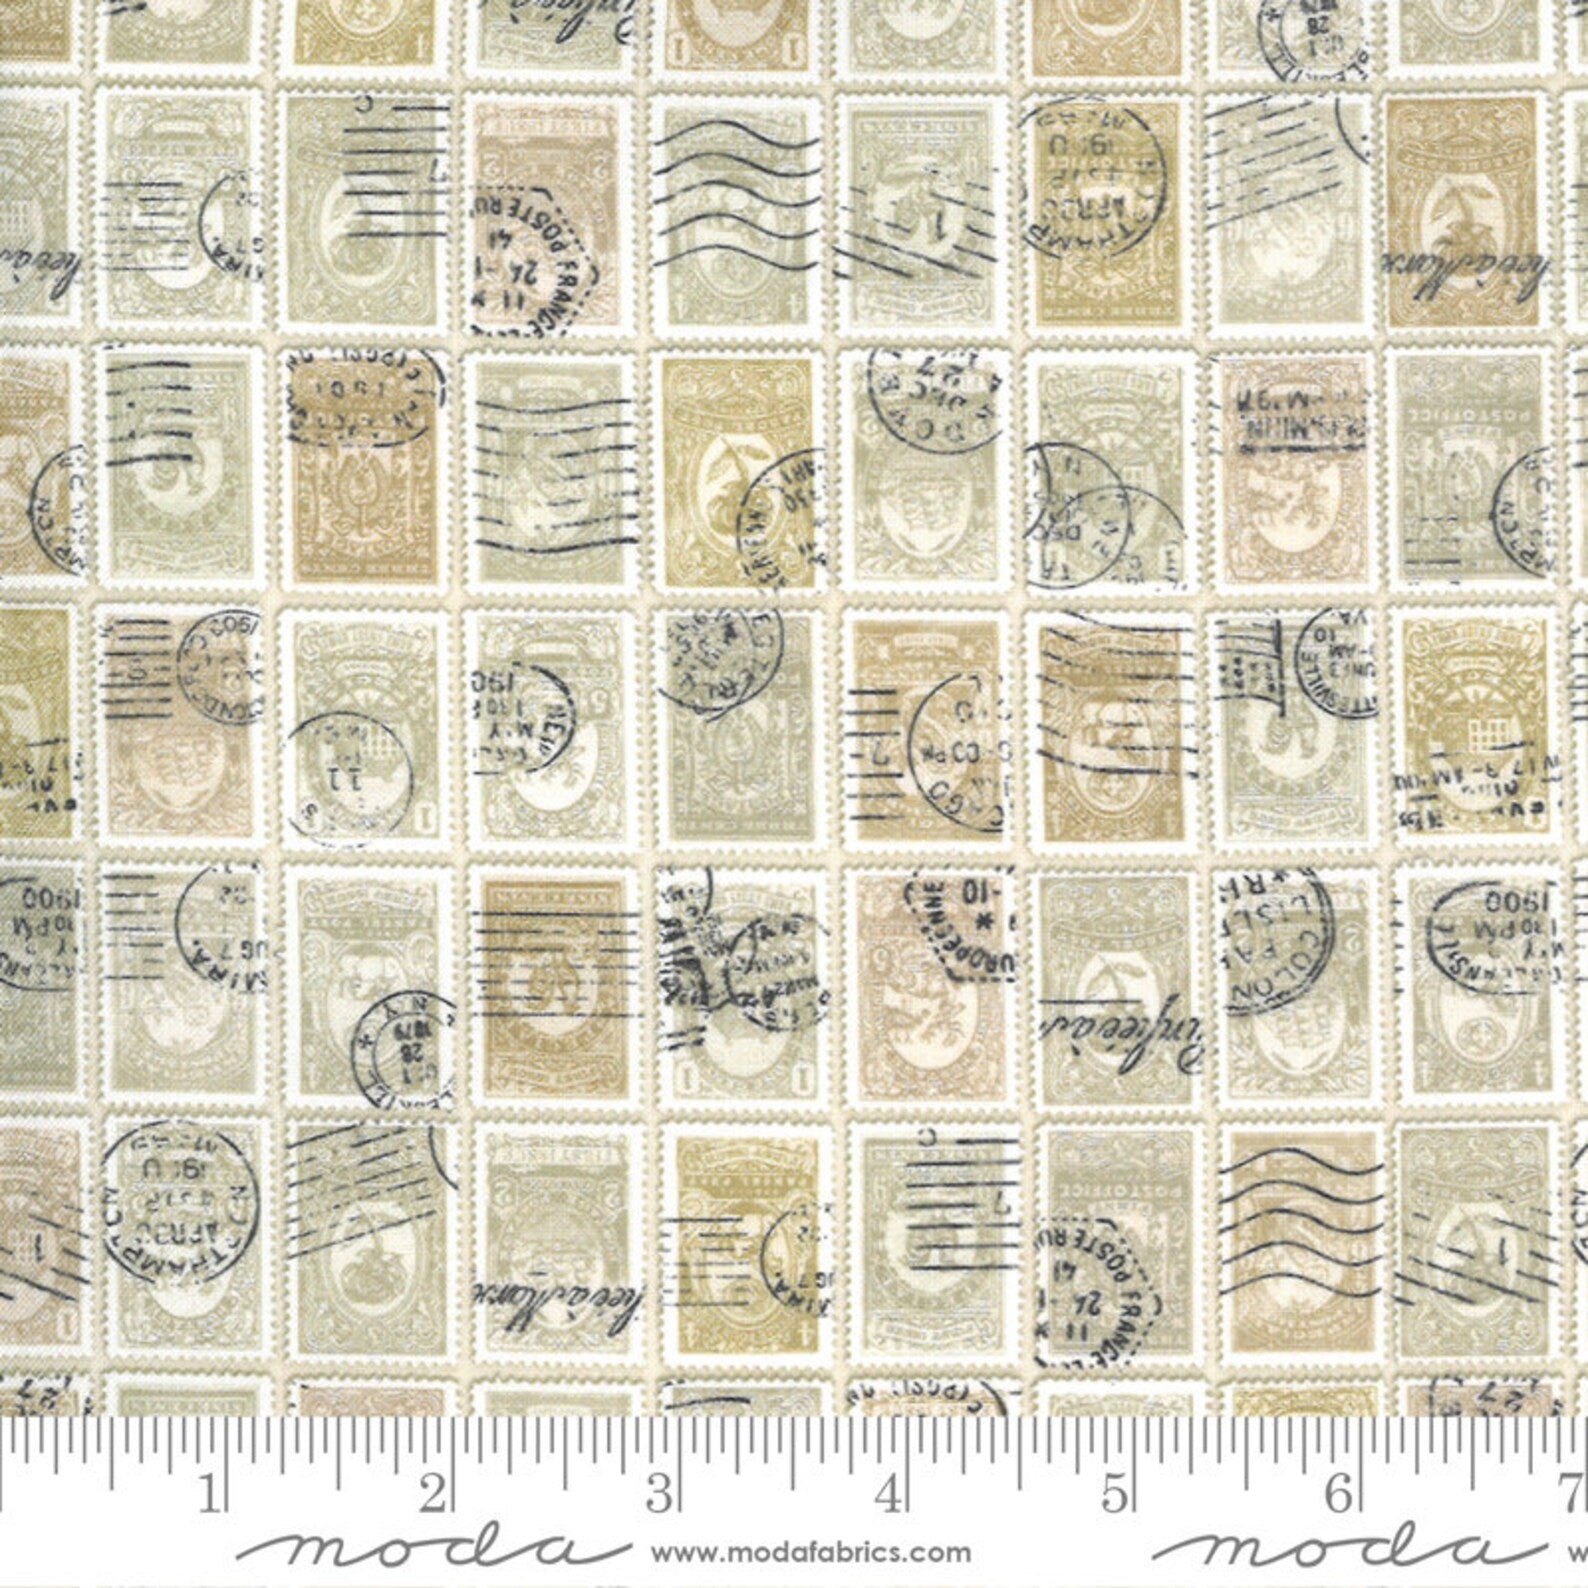 Flea Market Fresh Parchment stamps